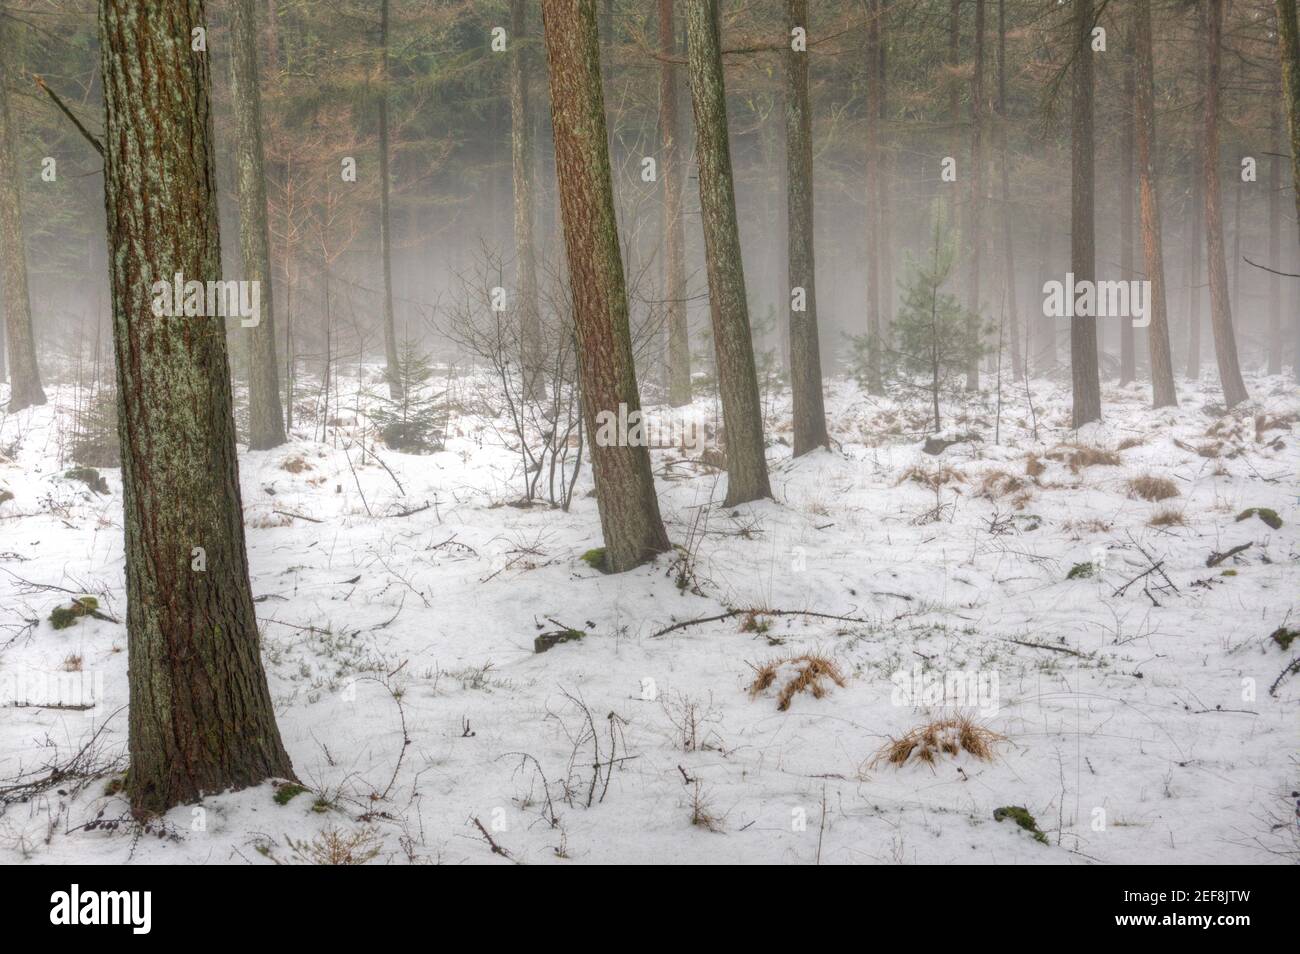 Fin del invierno, cambio de estaciones: En un bosque de Larch, la niebla cuelga sobre la nieve derretida Foto de stock